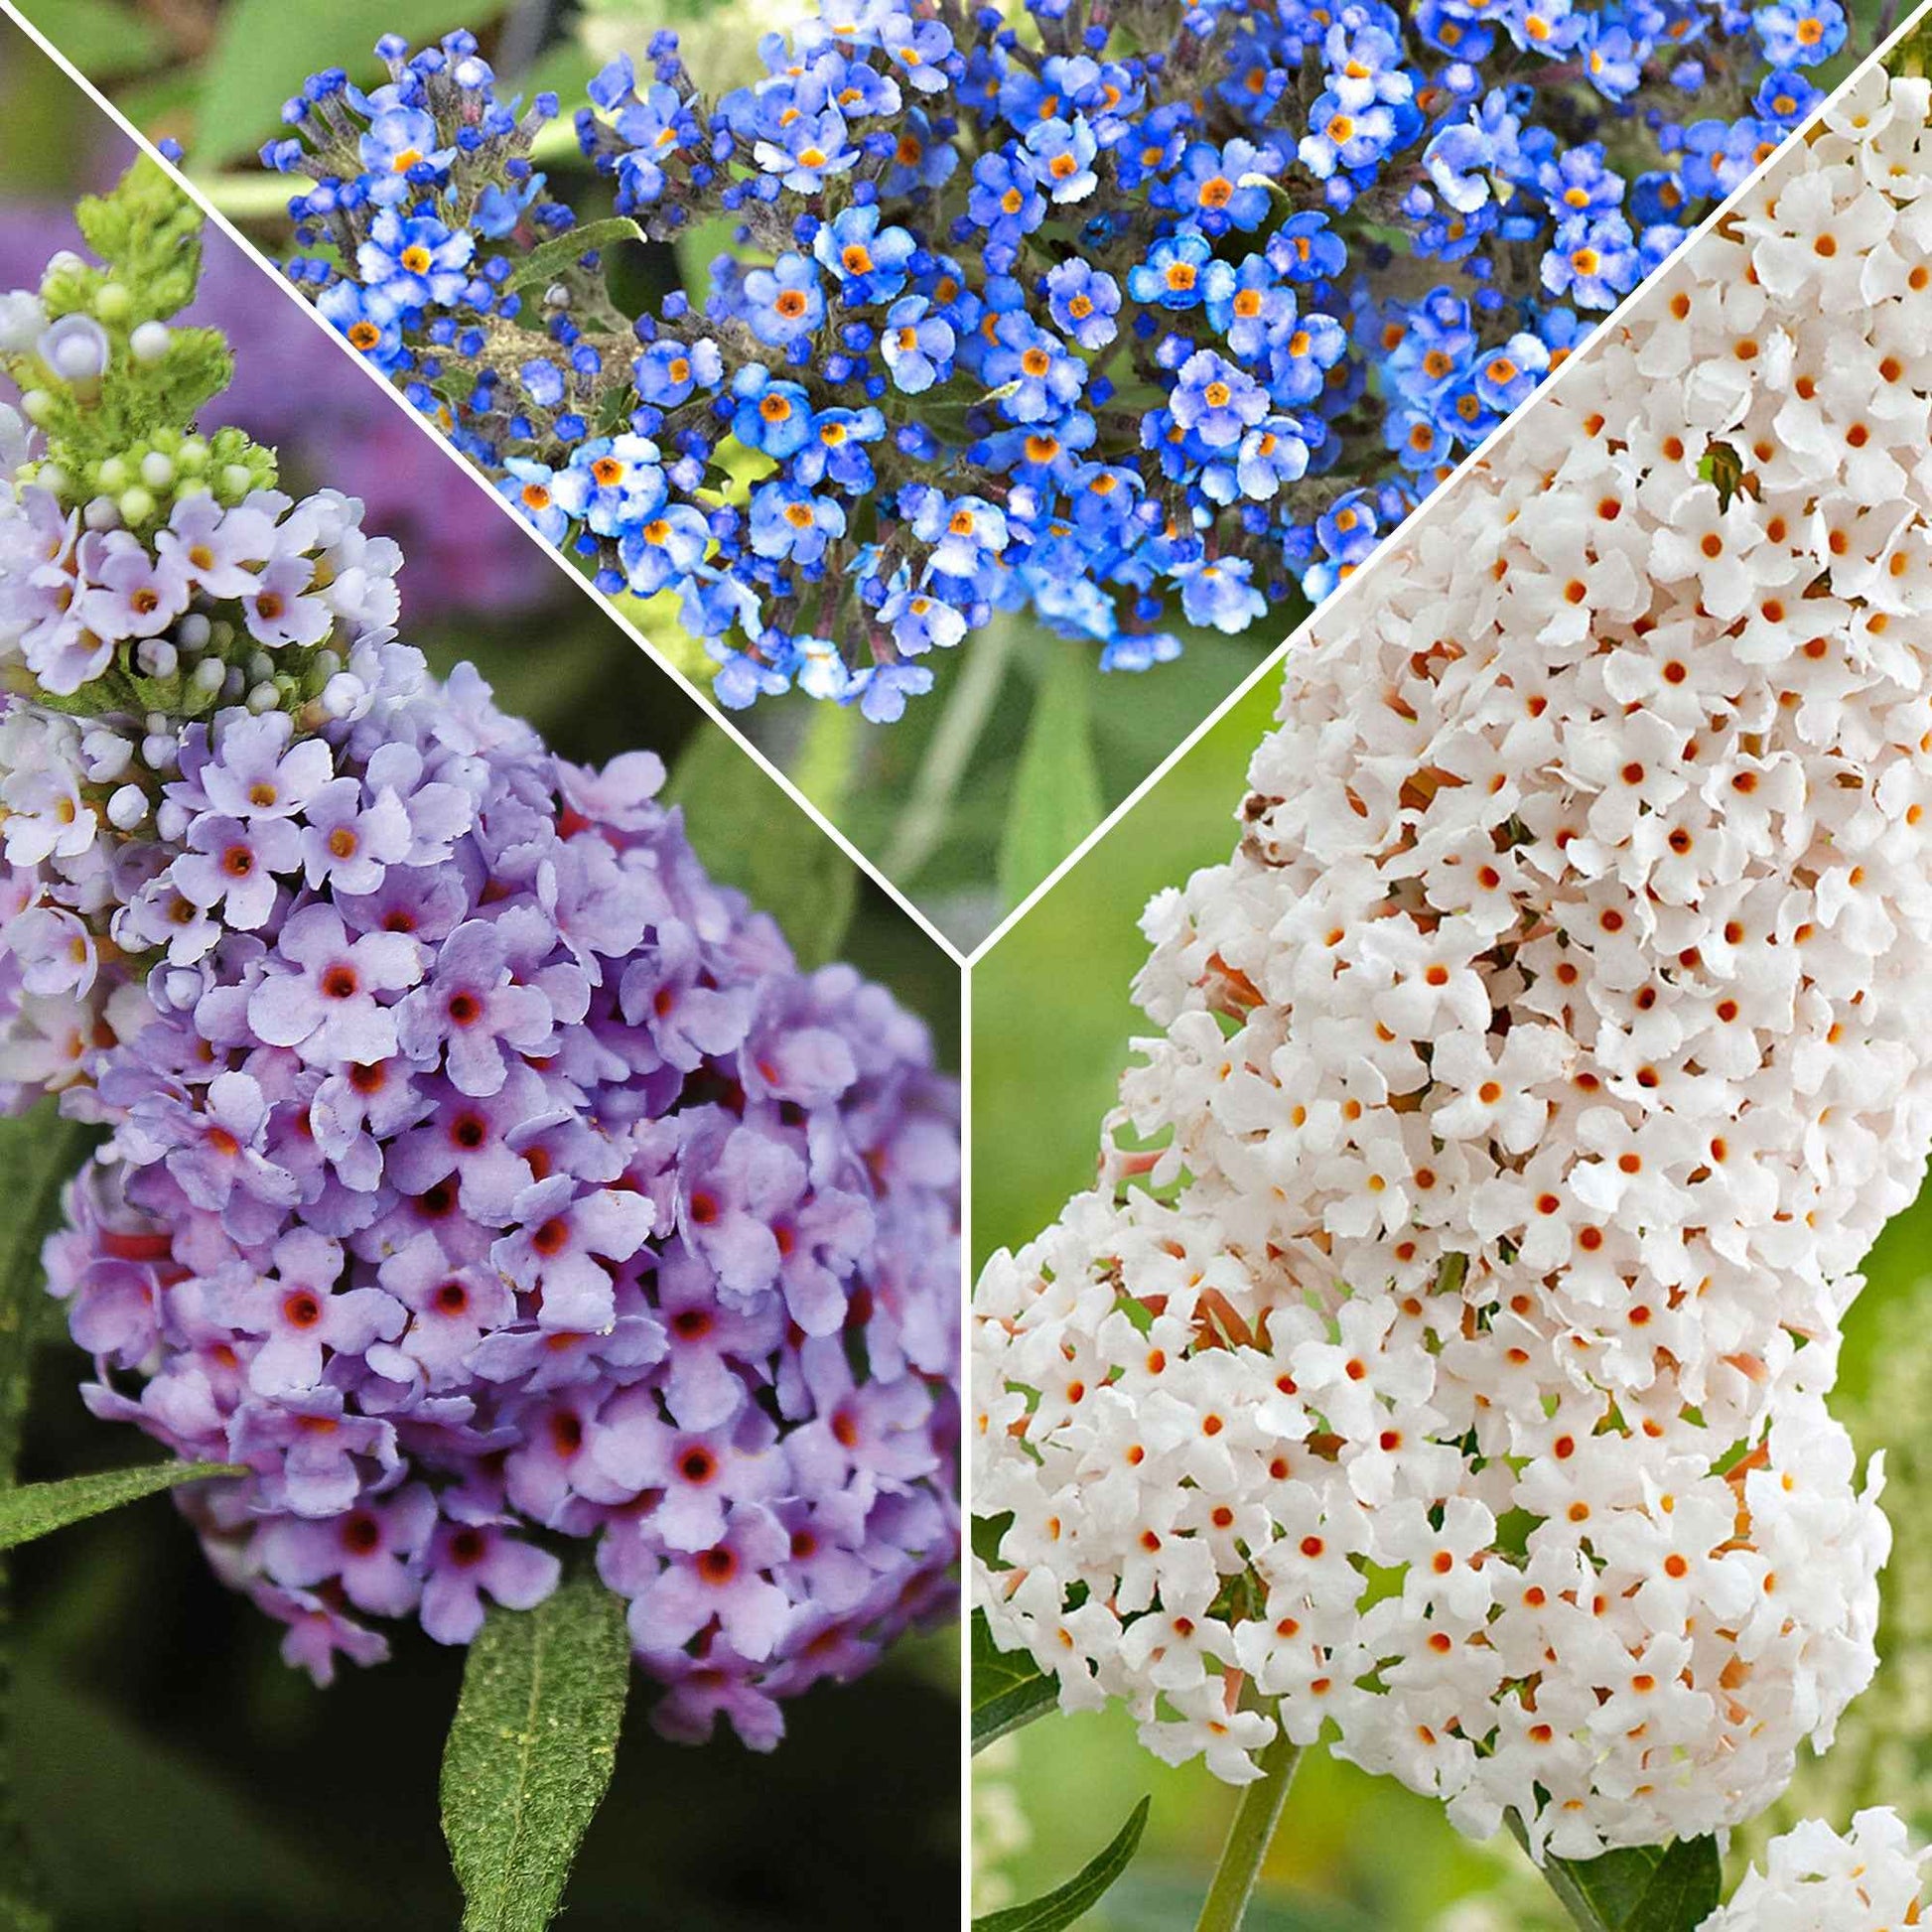 3x Schmetterlingsflieder Buddleja 'Lilac Turtle' + 'White Swan' + 'Blue Sarah' blau-lila-weiβ 'Tricolor' - Winterhart - Gartenpflanzen